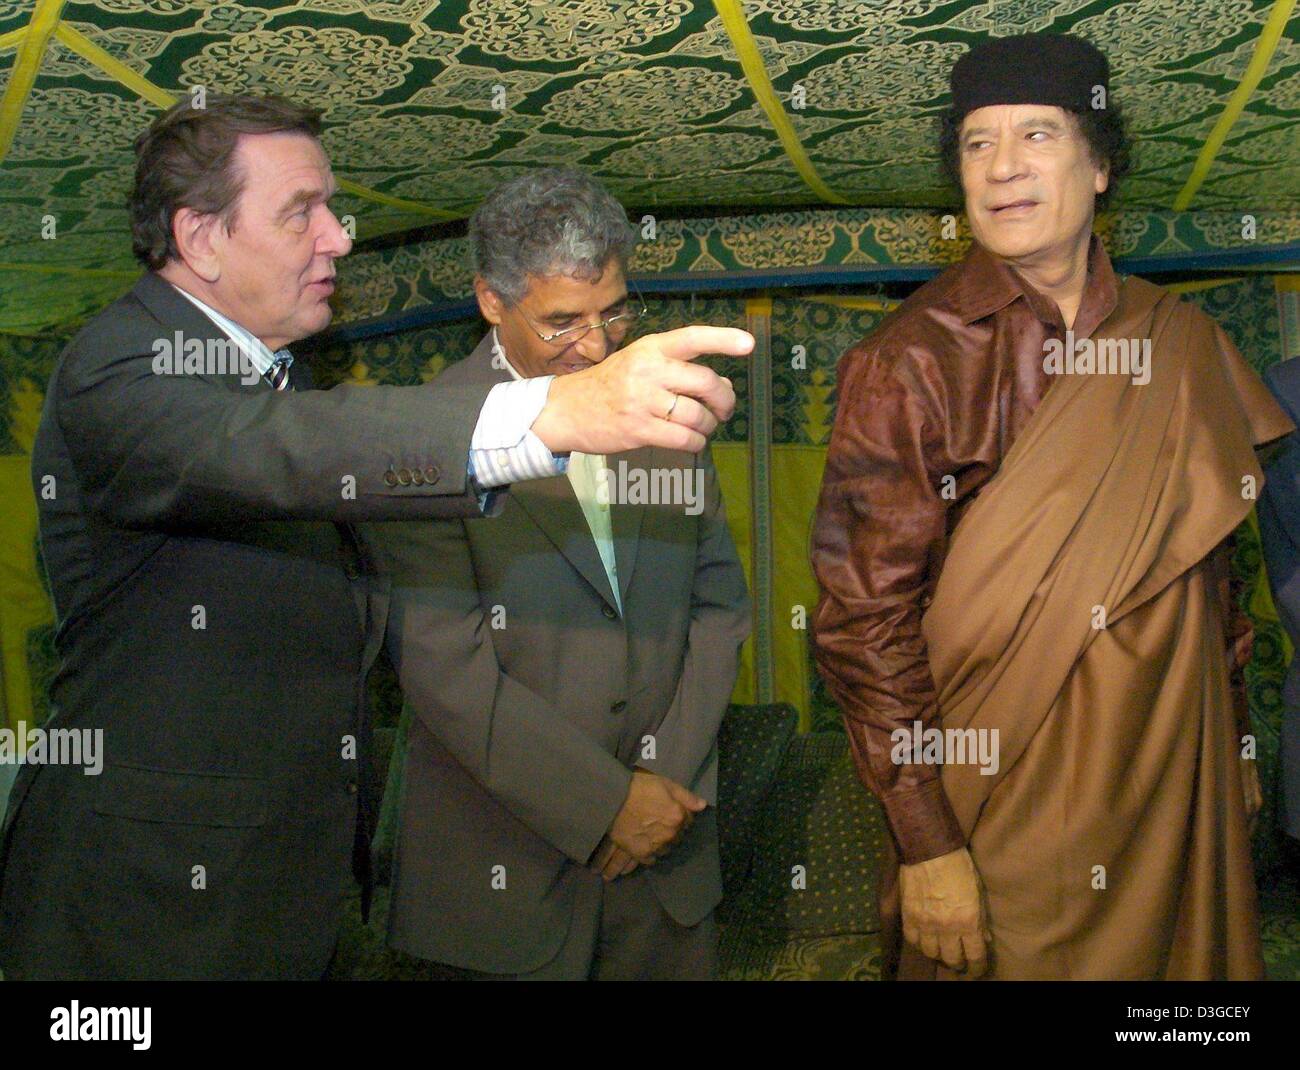 (Afp) - Le Chancelier allemand Gerhard Schroeder (L) rencontre le dirigeant libyen Mouammar Kadhafi (R) pour des entretiens à une tente traditionnelle à Tripoli, Libye, jeudi 14 octobre 2004. Schroeder est arrivé ici jeudi soir pour le lancement de son premier de deux jours visite en Libye, la première par un leader allemand de 25 ans. Au niveau politique, les autorités de Berlin a déclaré que la visite vise à encourager Li Banque D'Images